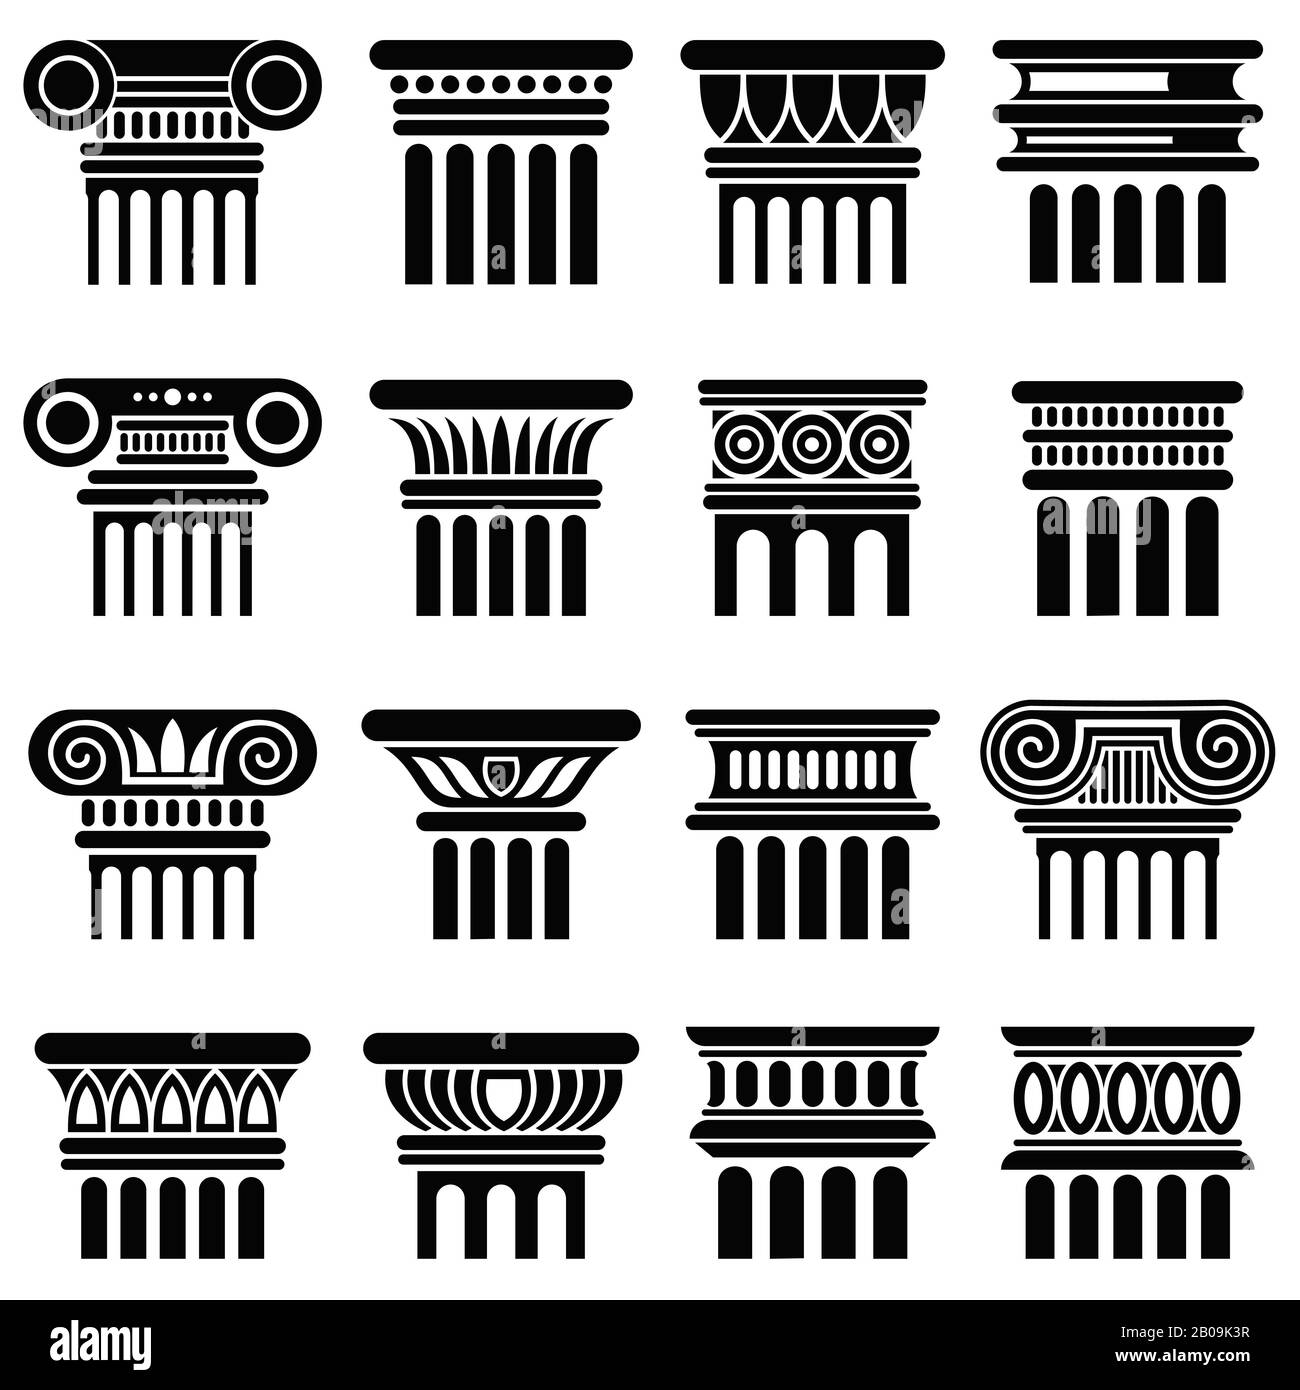 Arquitectura antigua de roma iconos de columna vector. Columna de silueta negra, ilustración de columna griega clásica antigua Ilustración del Vector